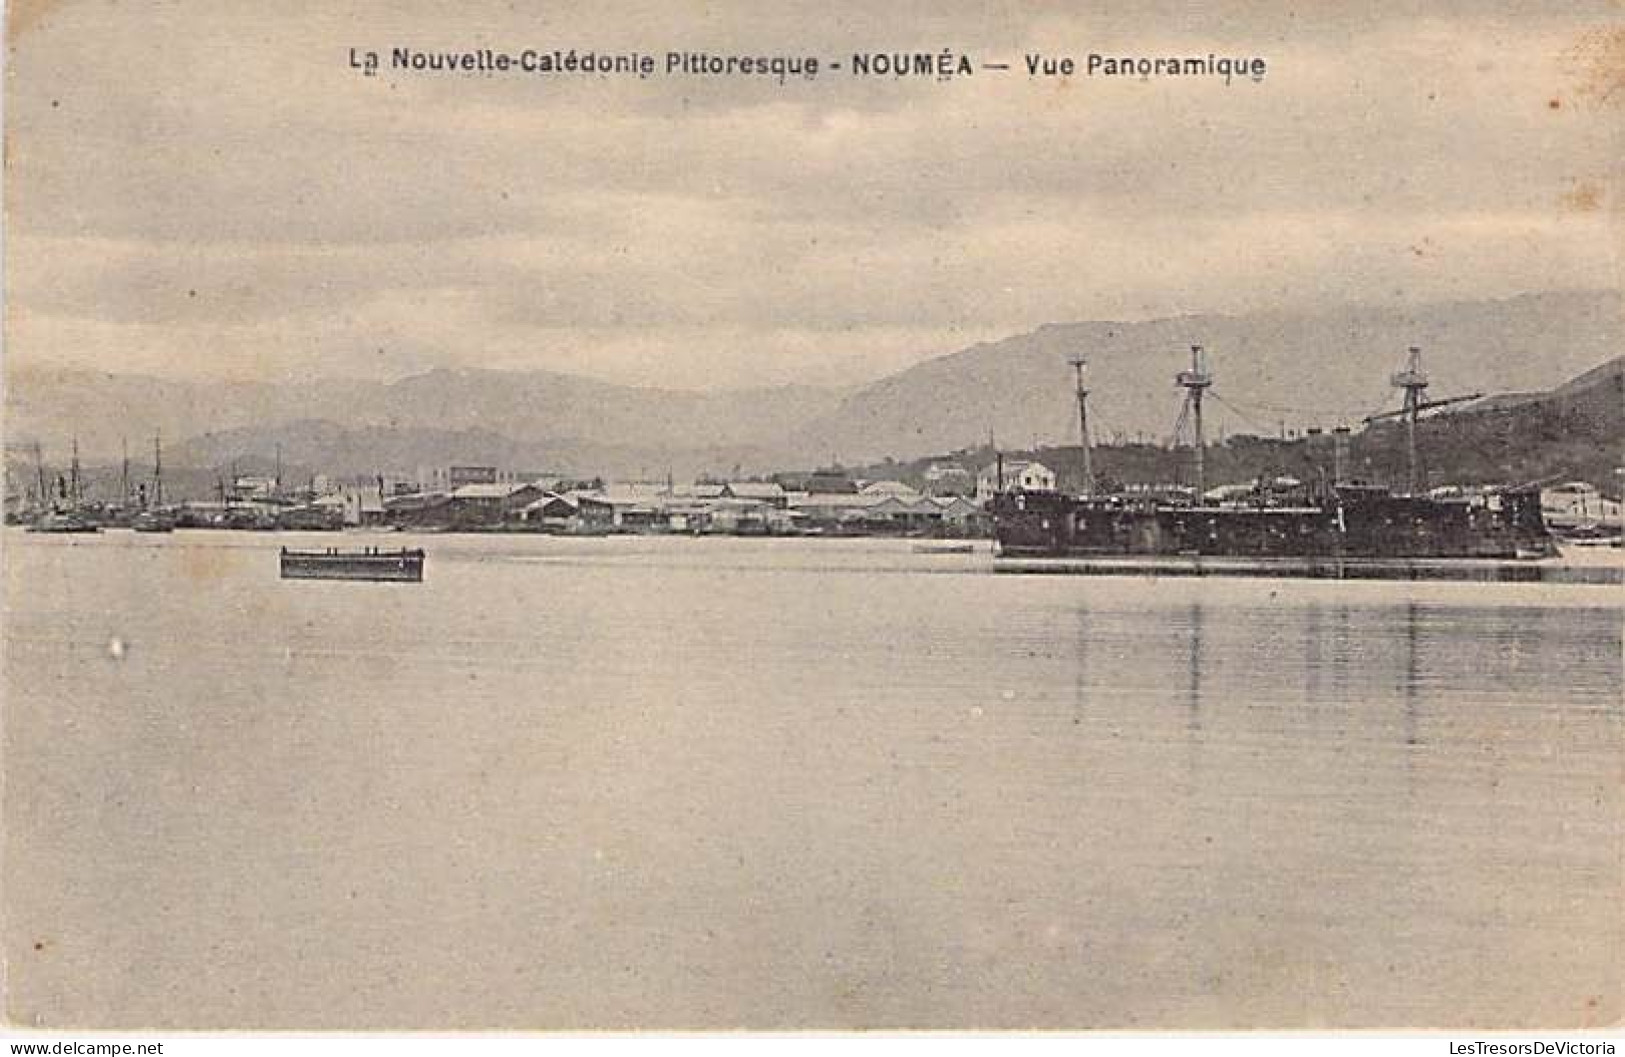 Nouvelle Calédonie Pittoresque - Nouméa - Vue Panoramique - Bateau - Béchade - Carte Postale Ancienne - Neukaledonien